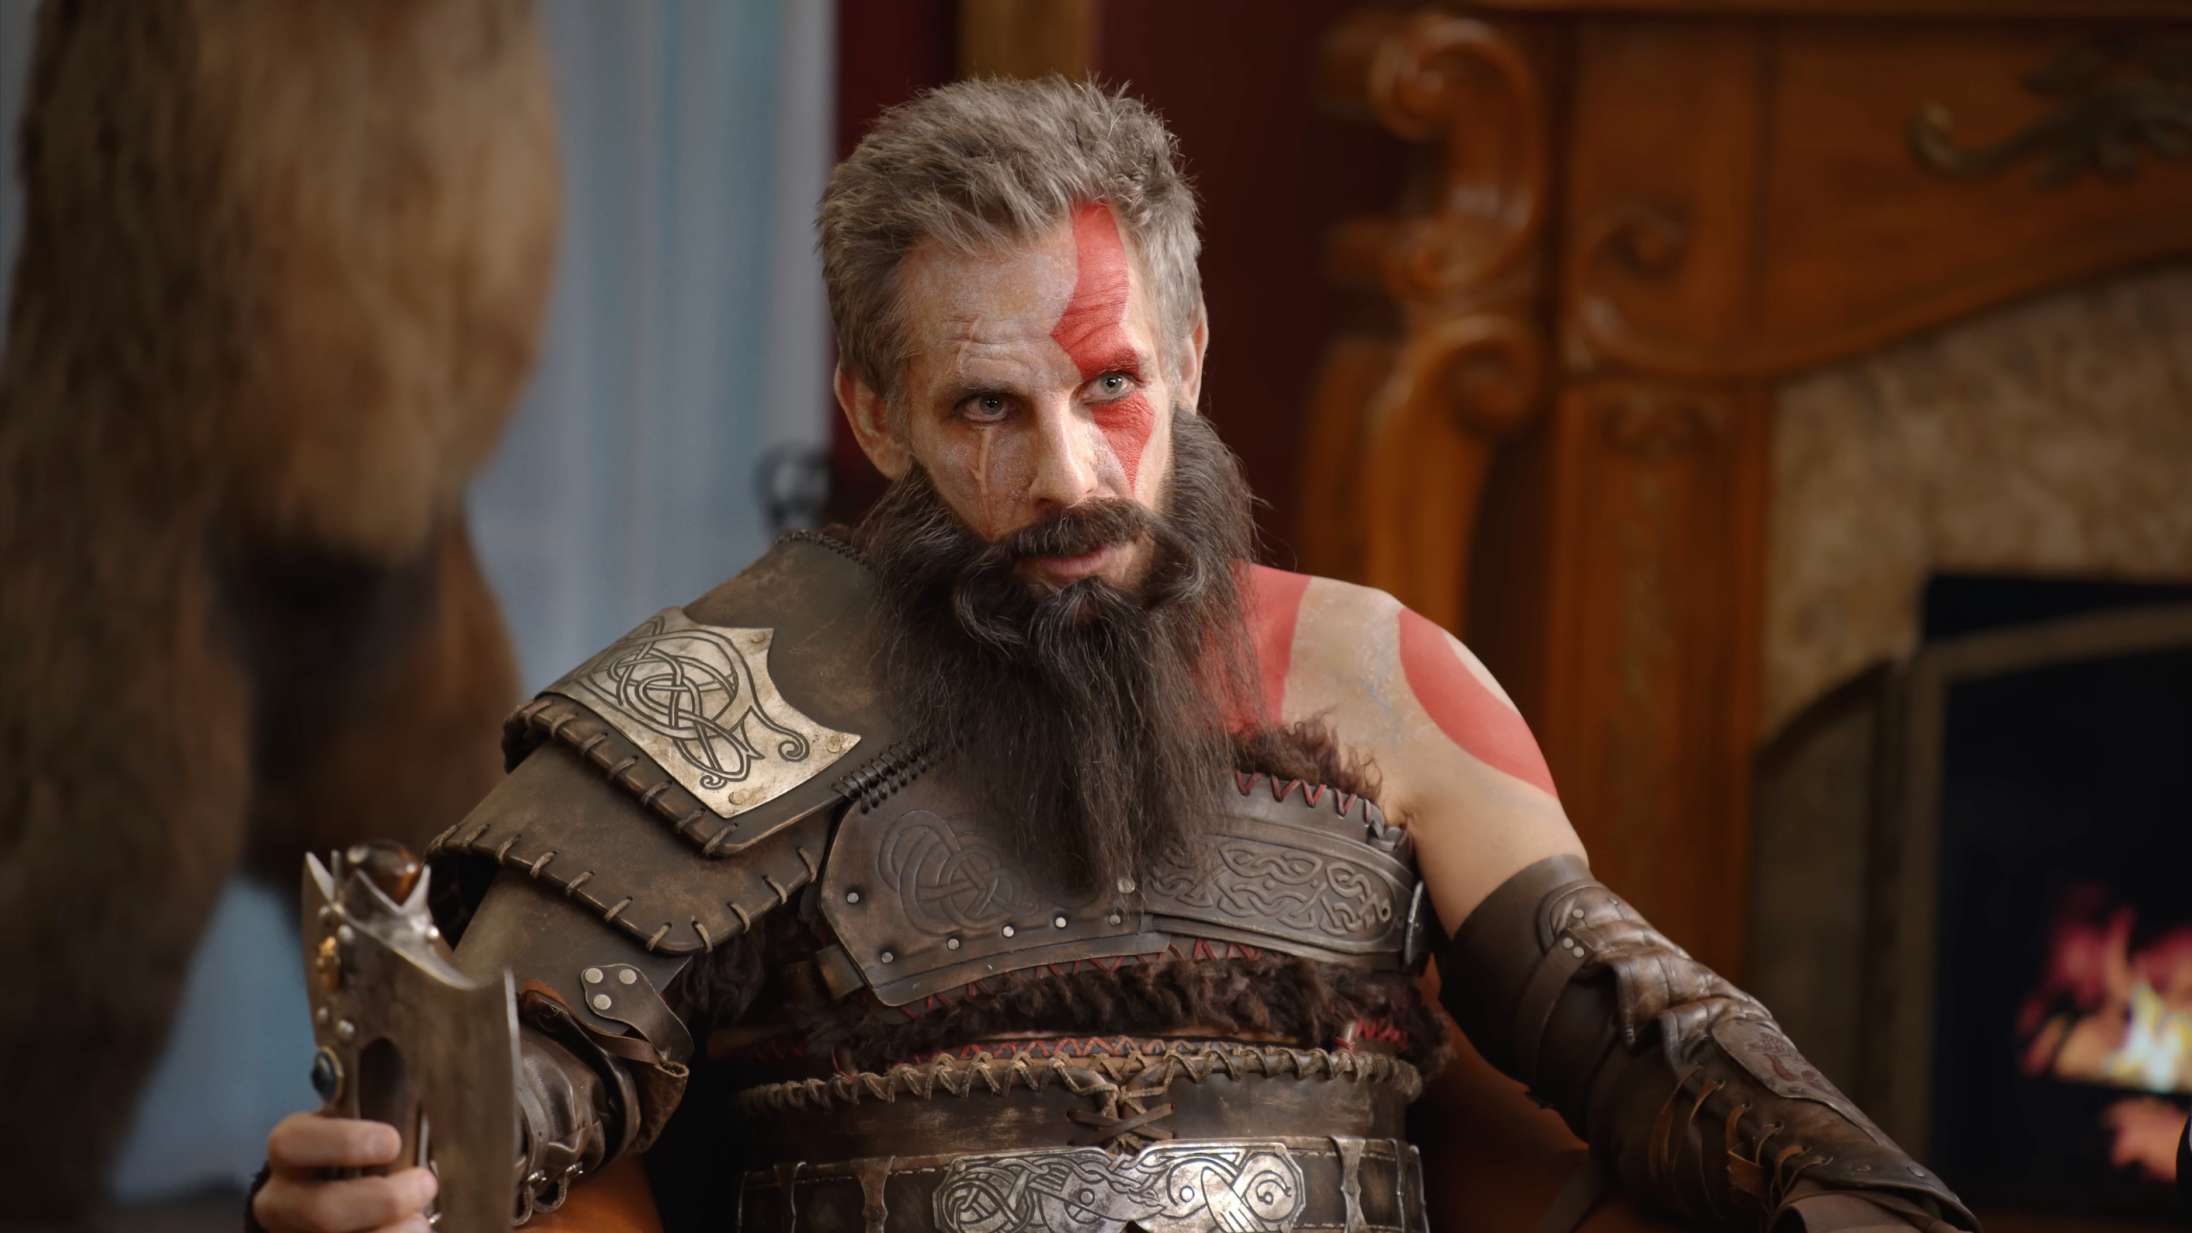 Ben Stiller laver familieterapi for John Travolta og LeBron James i komisk ‘God of War’-video